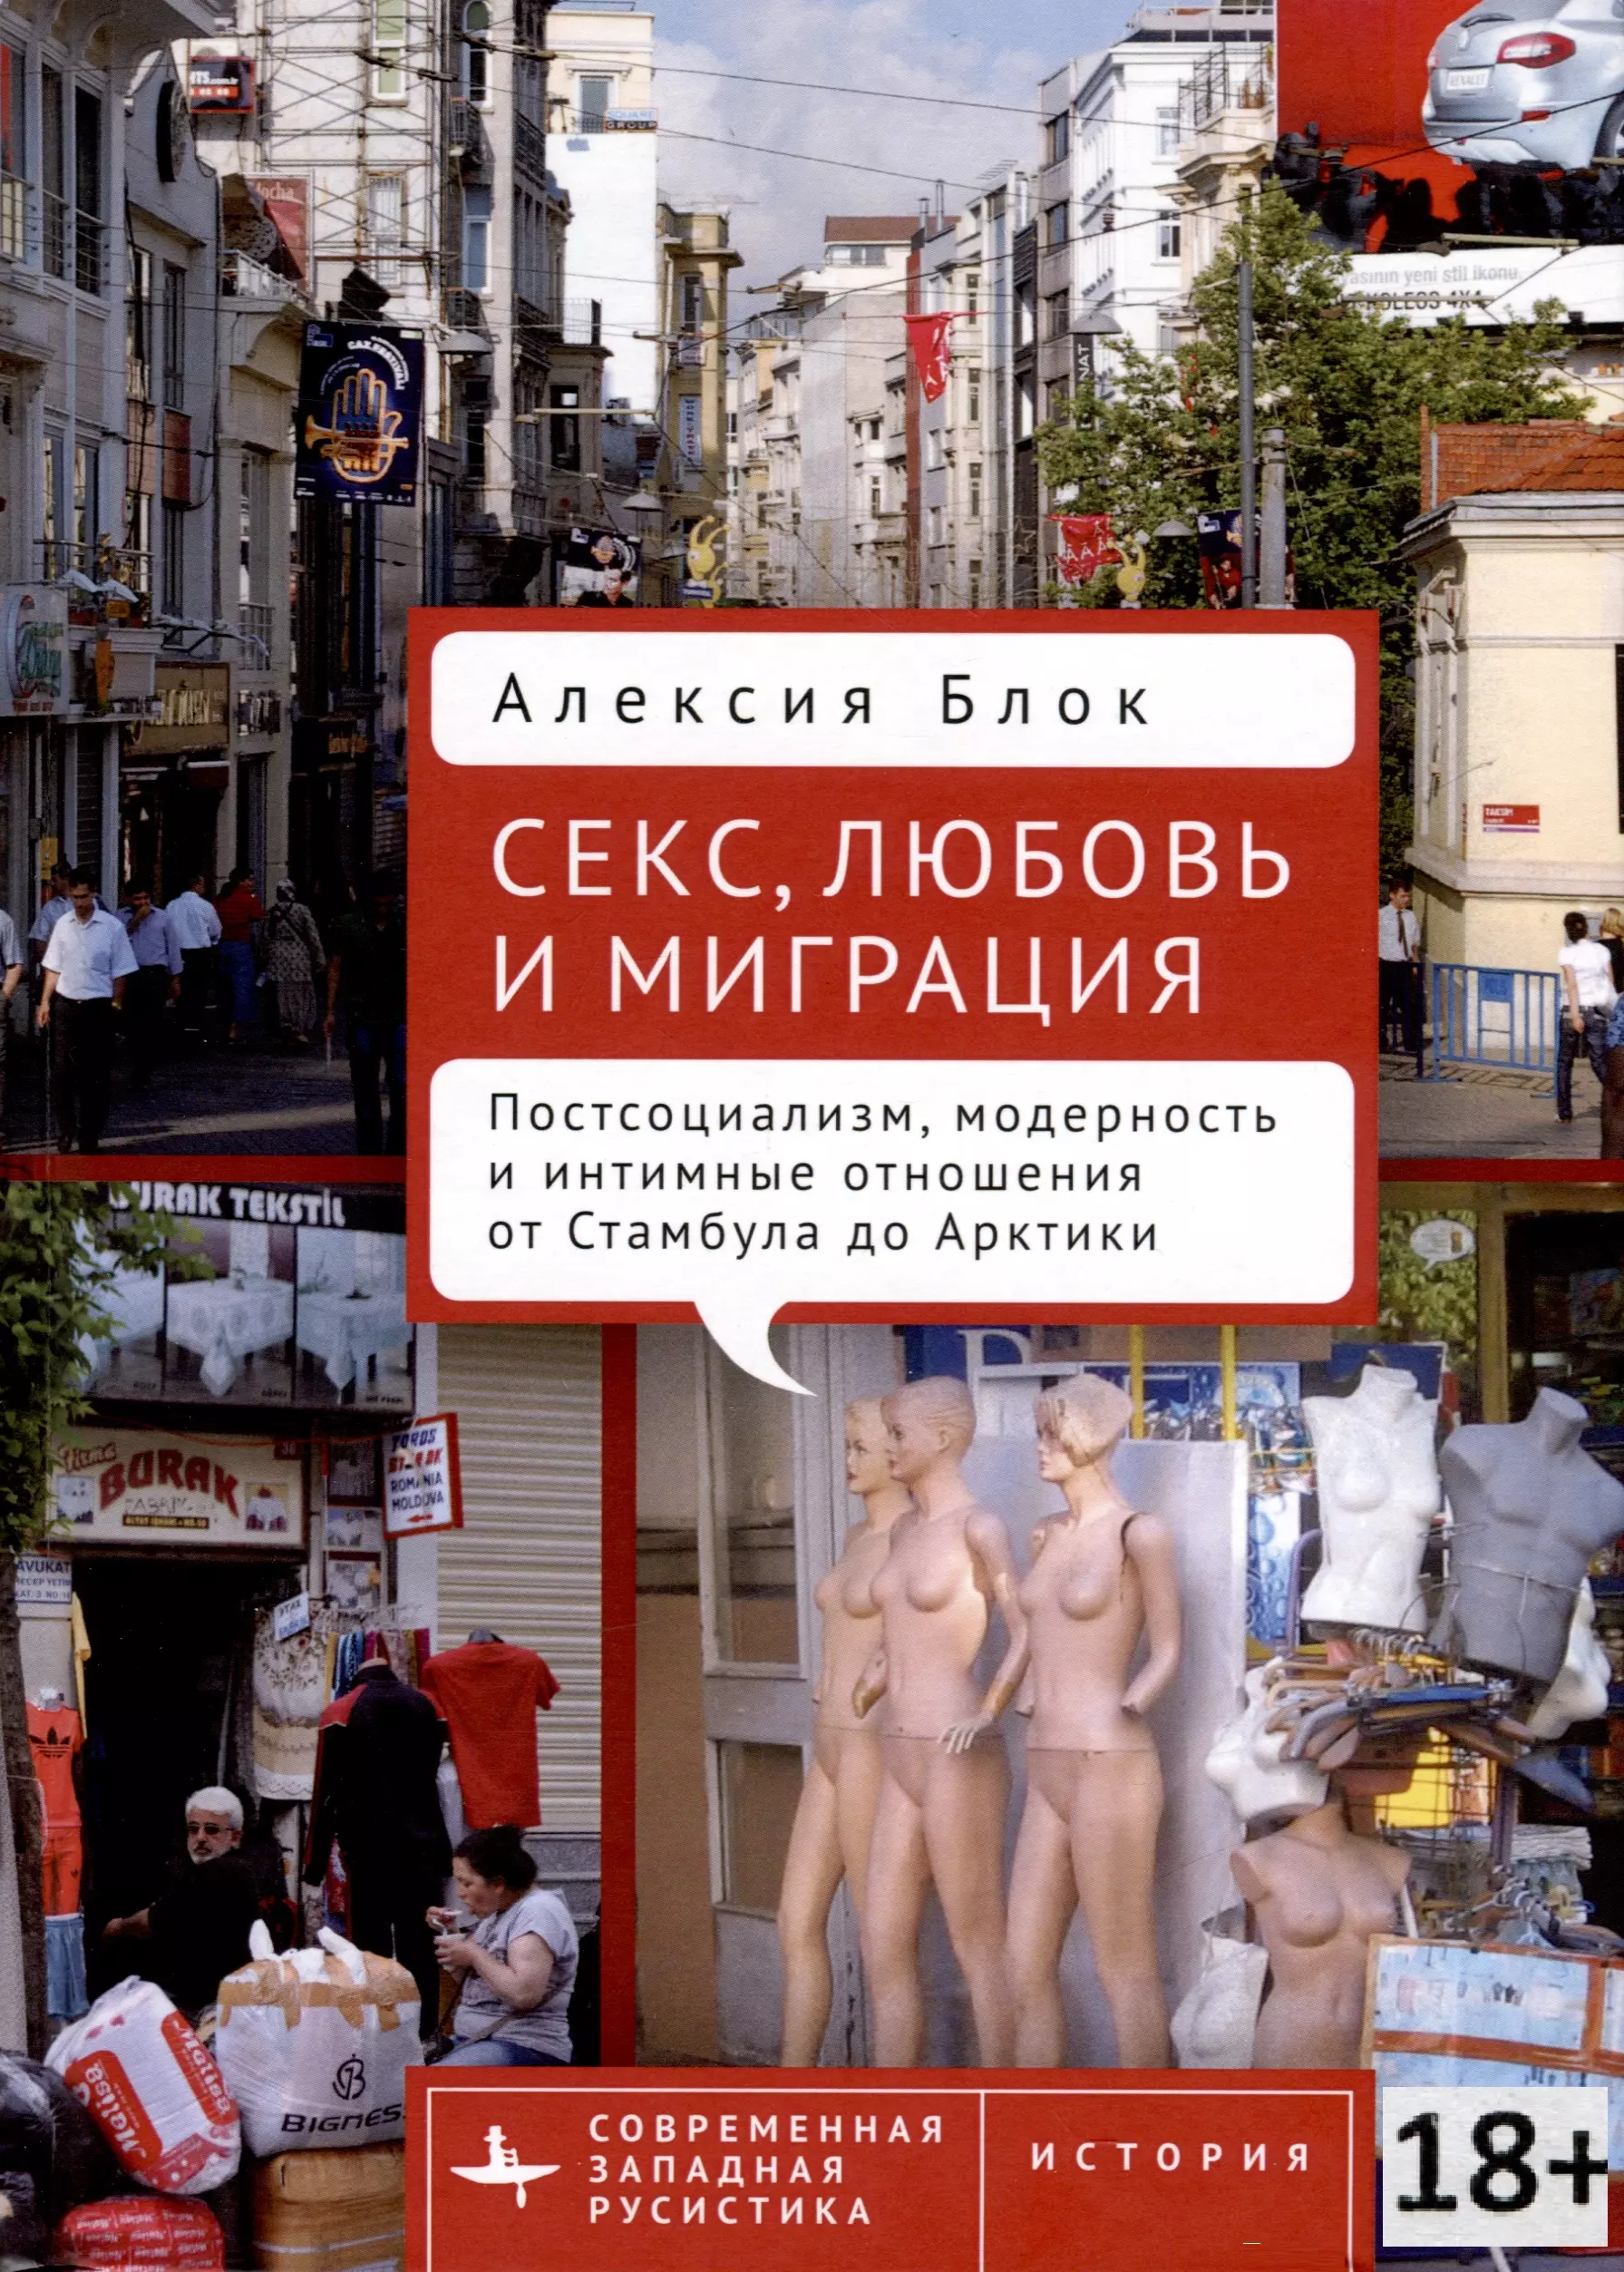 Блок Алексия - Секс, любовь и миграция. Постсоциализм, модерность и интимные отношения от Стамбула до Арктики